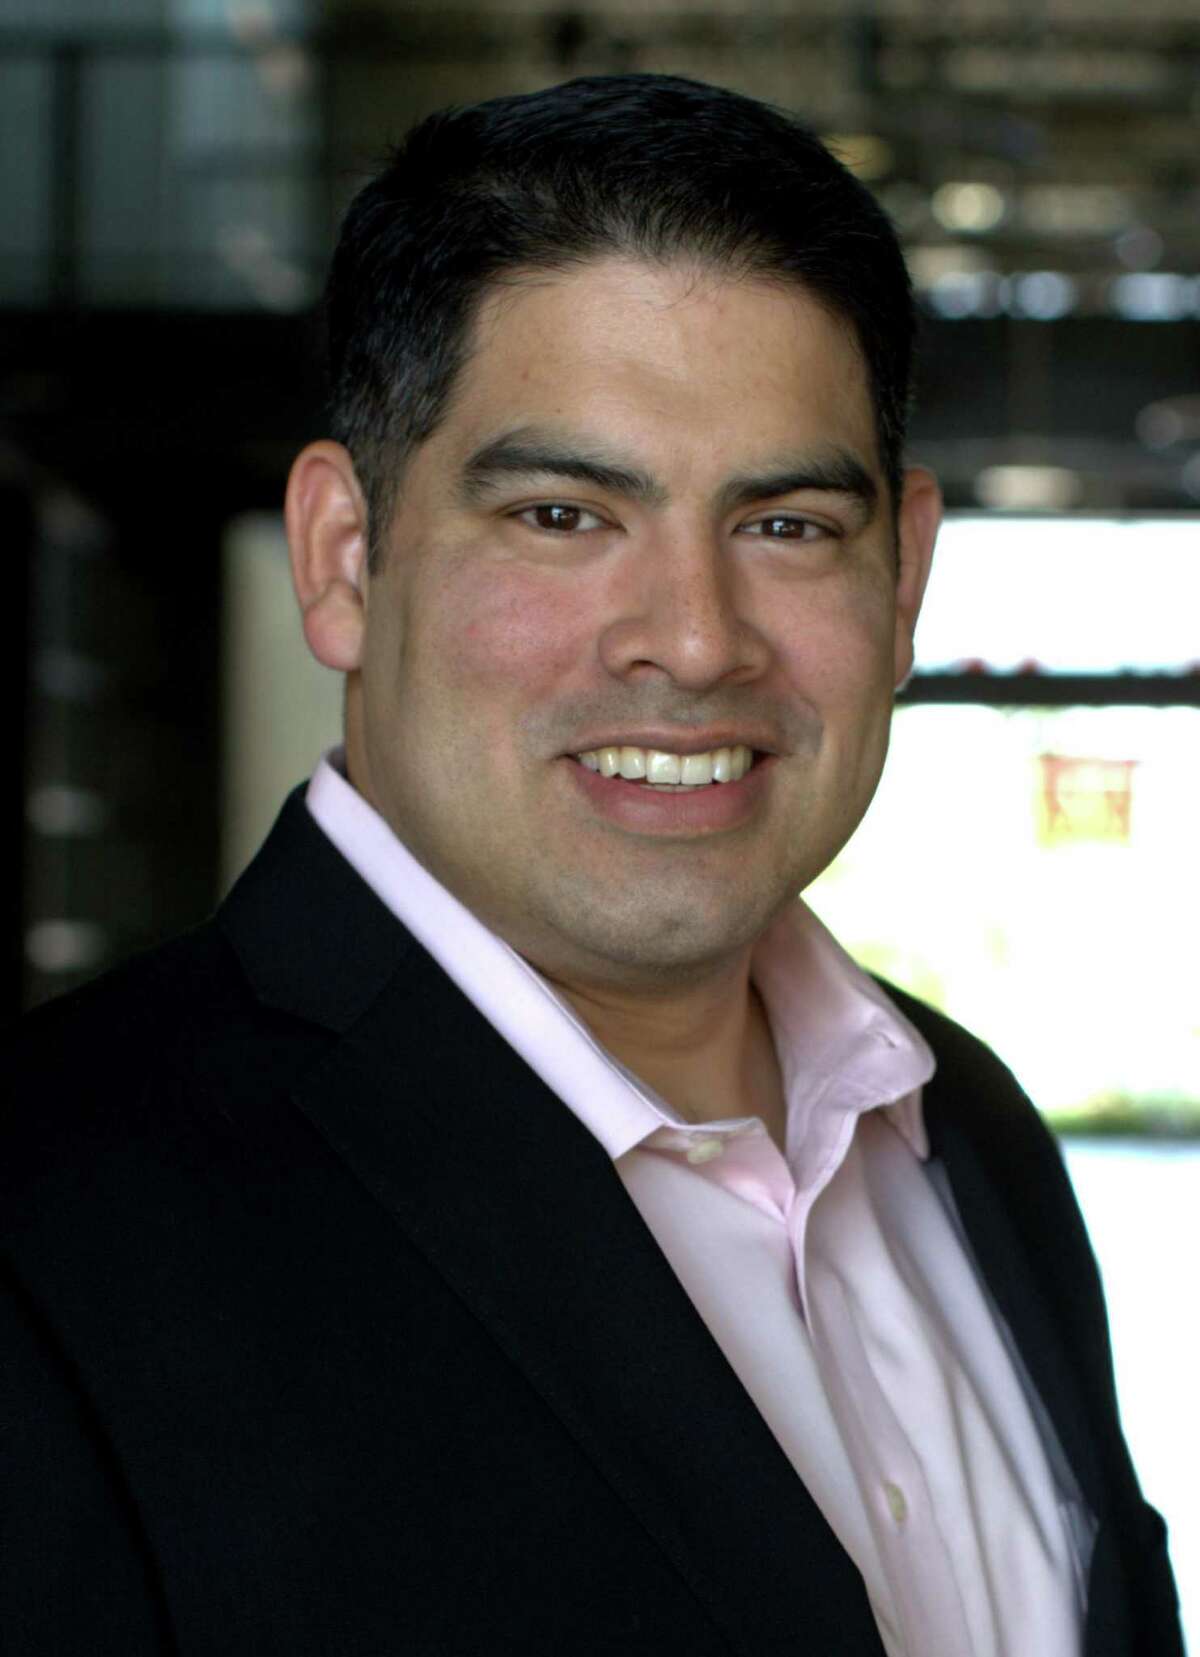 Manny Pelaez, candidate for City Council District 8.